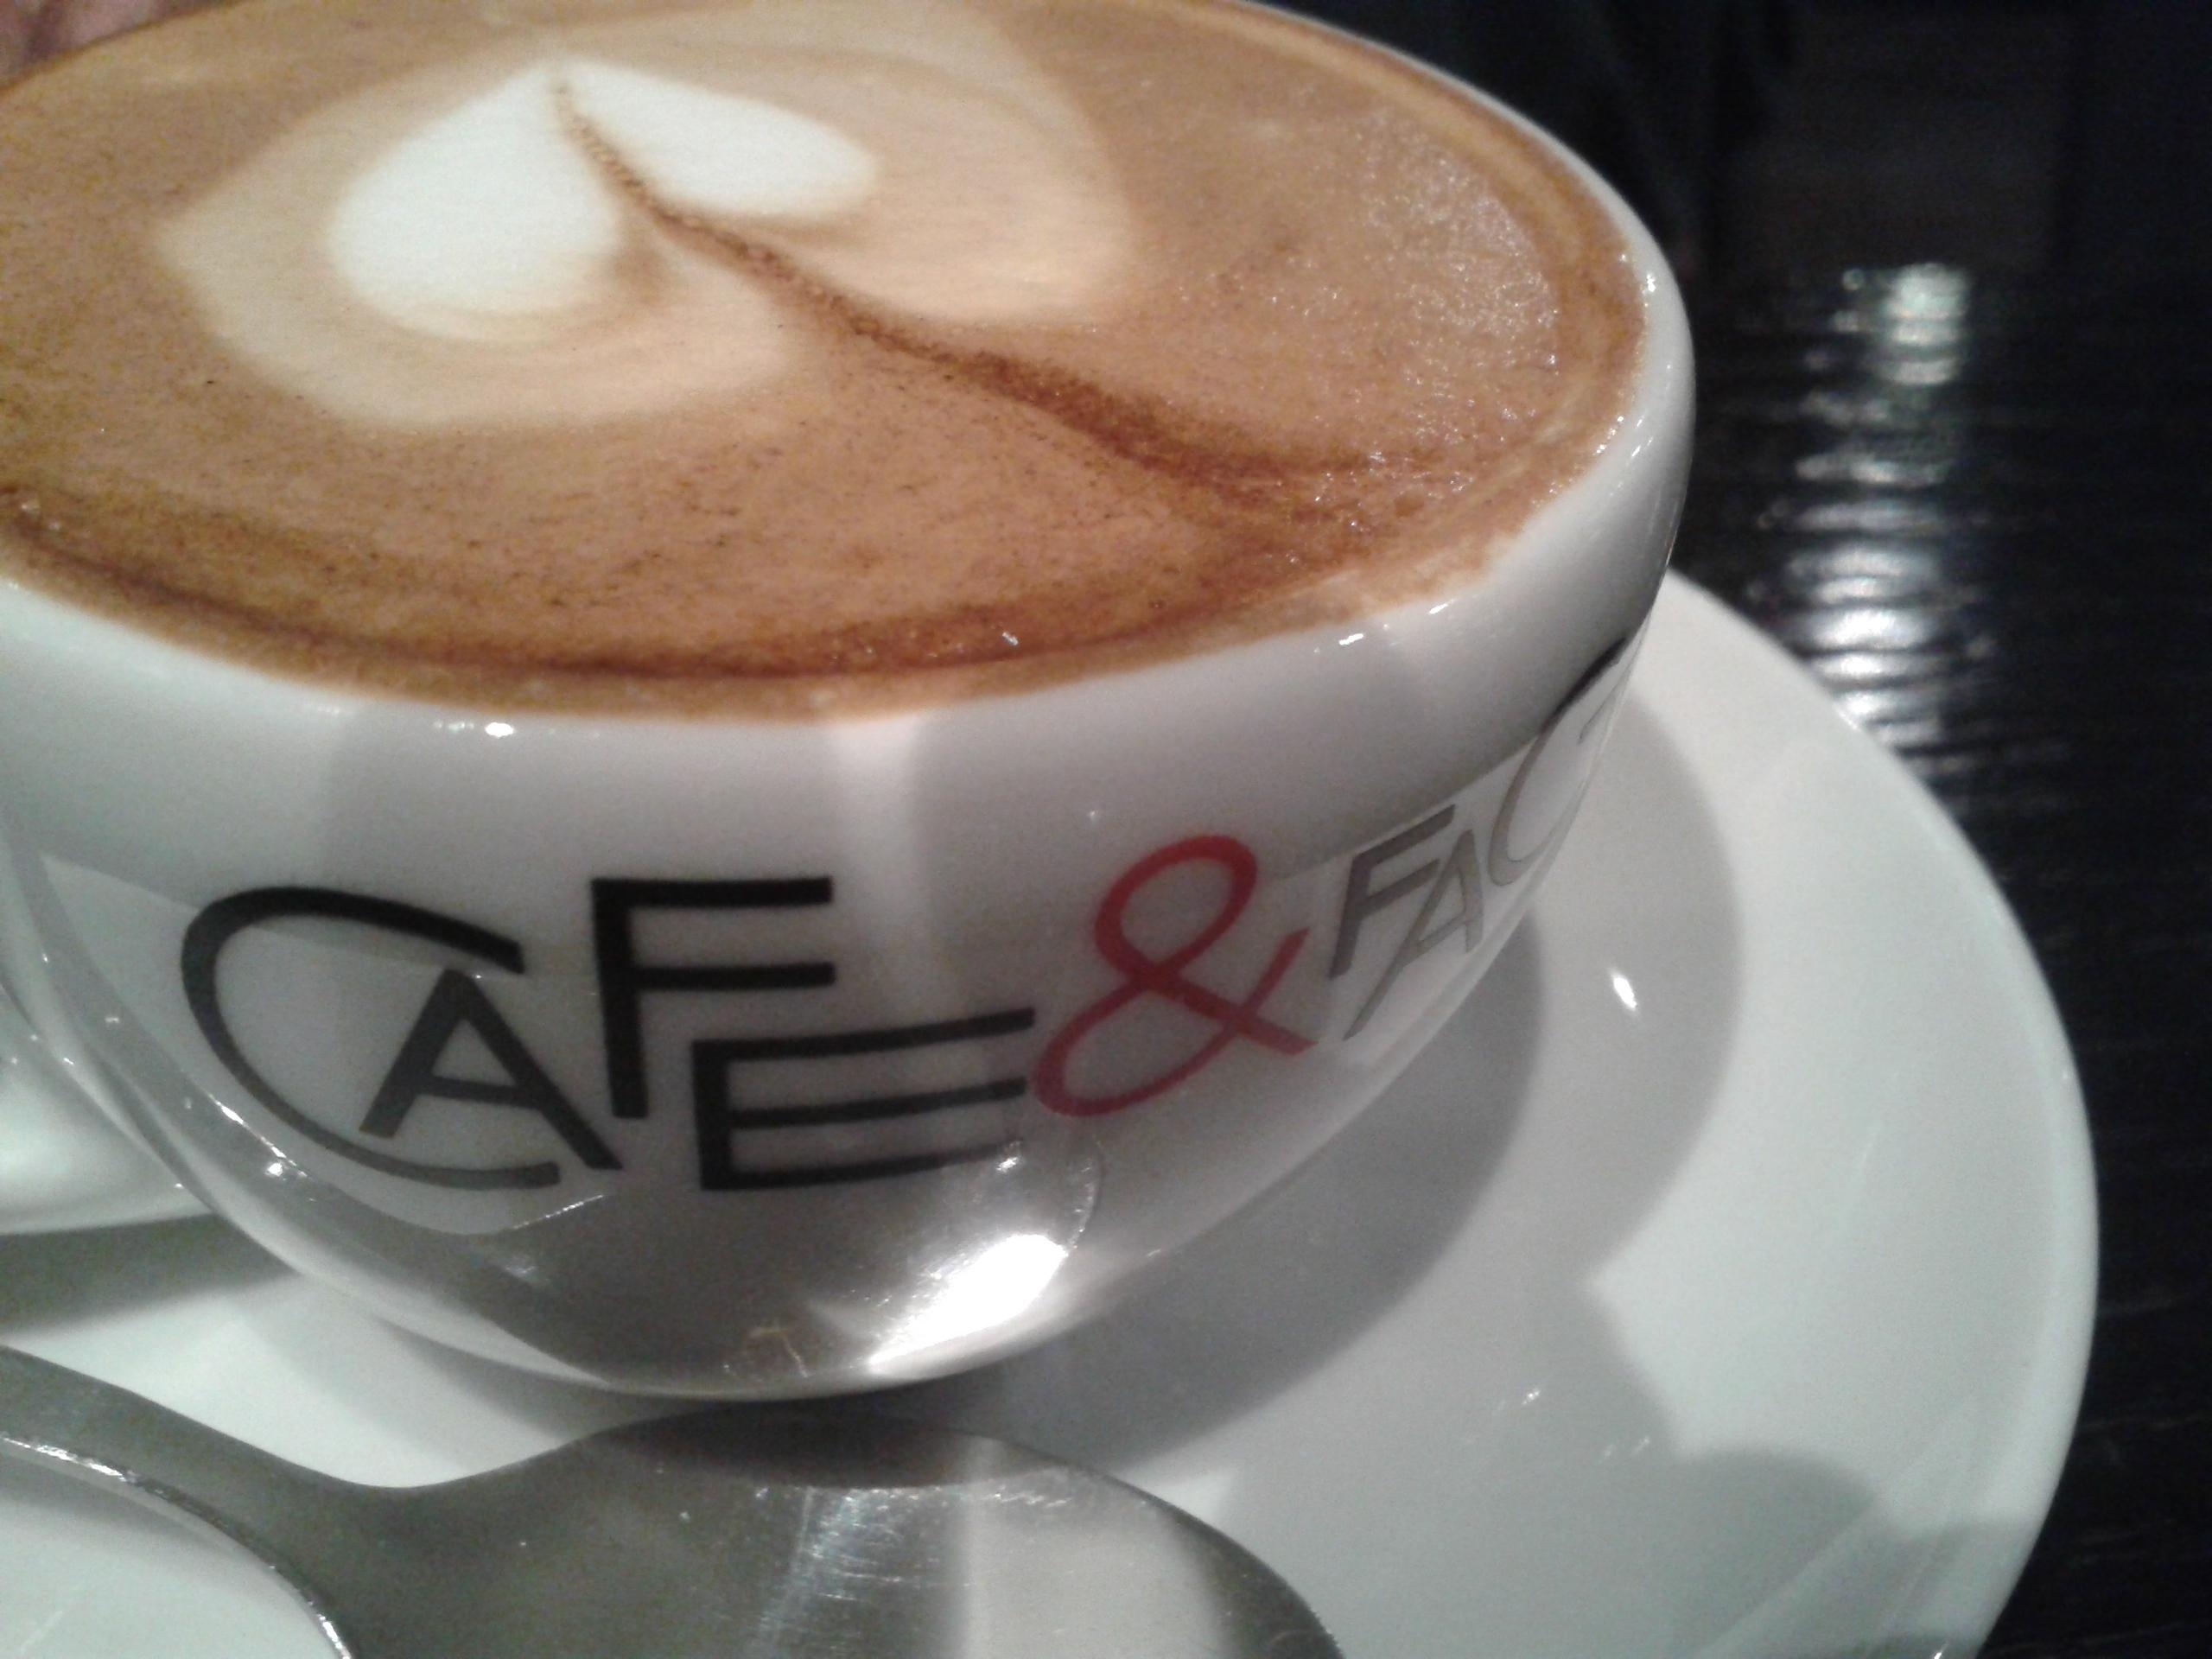 In Zagreb im Caféhaus ein Café
mit Liebe gemacht!
#foodchallenge #coffeelover #coffeewithheart #happy #madewithlove